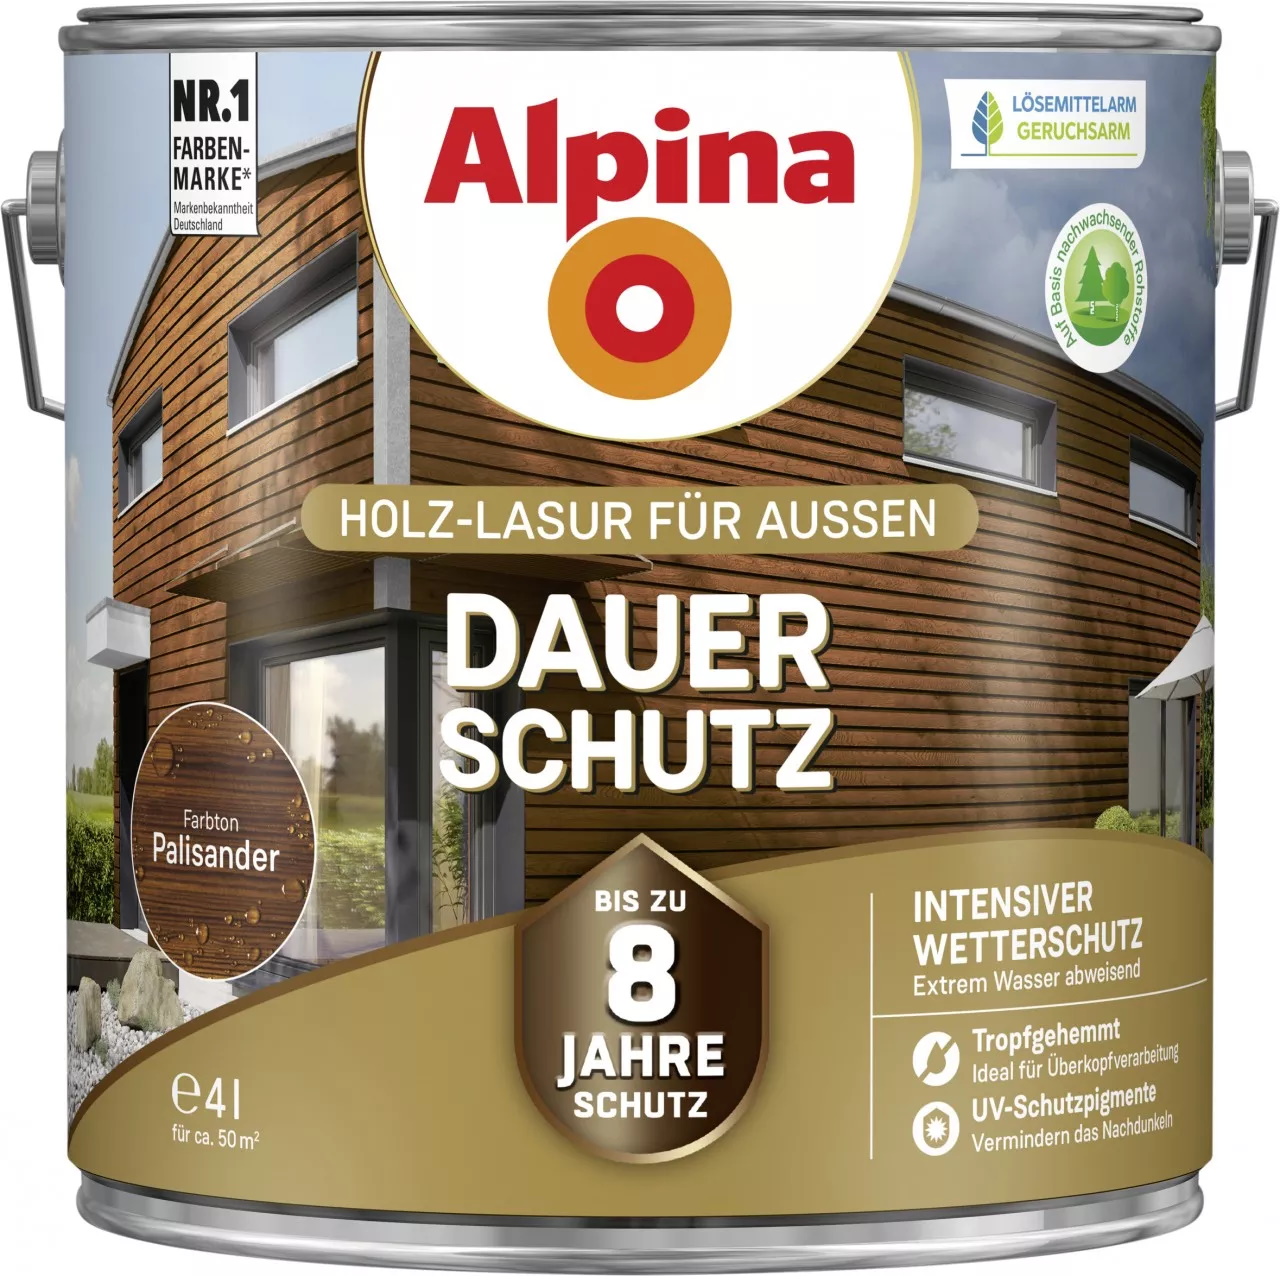 Alpina Dauer-Schutz Holz-Lasur für Außen Palisander 4 Liter